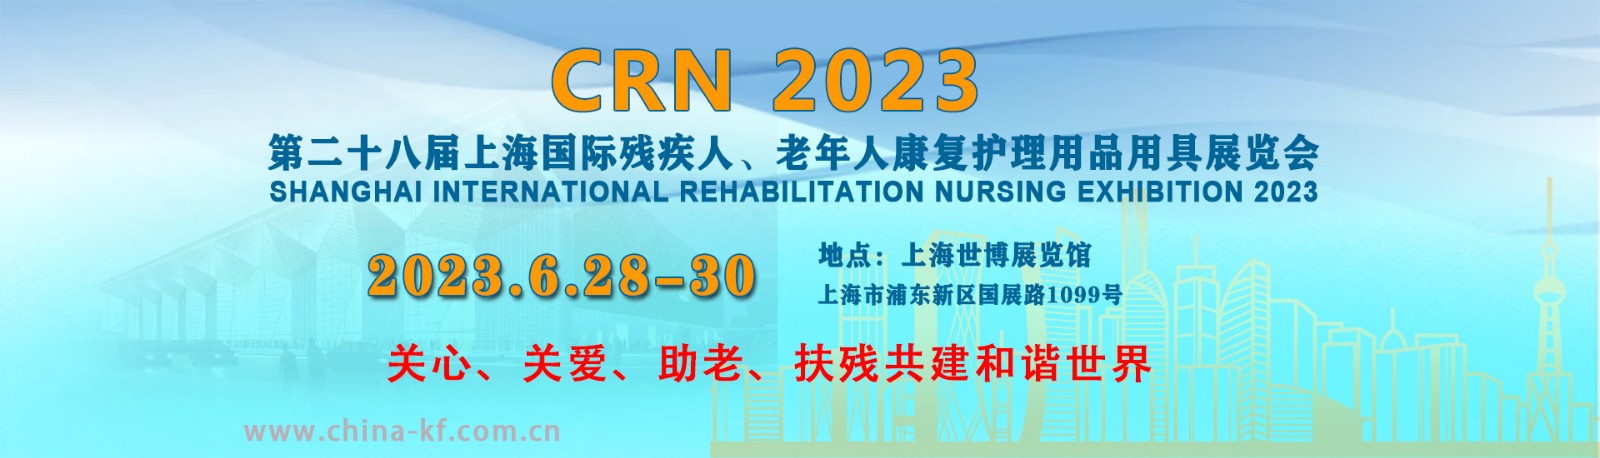 2023上海国际残疾人、老年人康复护理展会目标观众